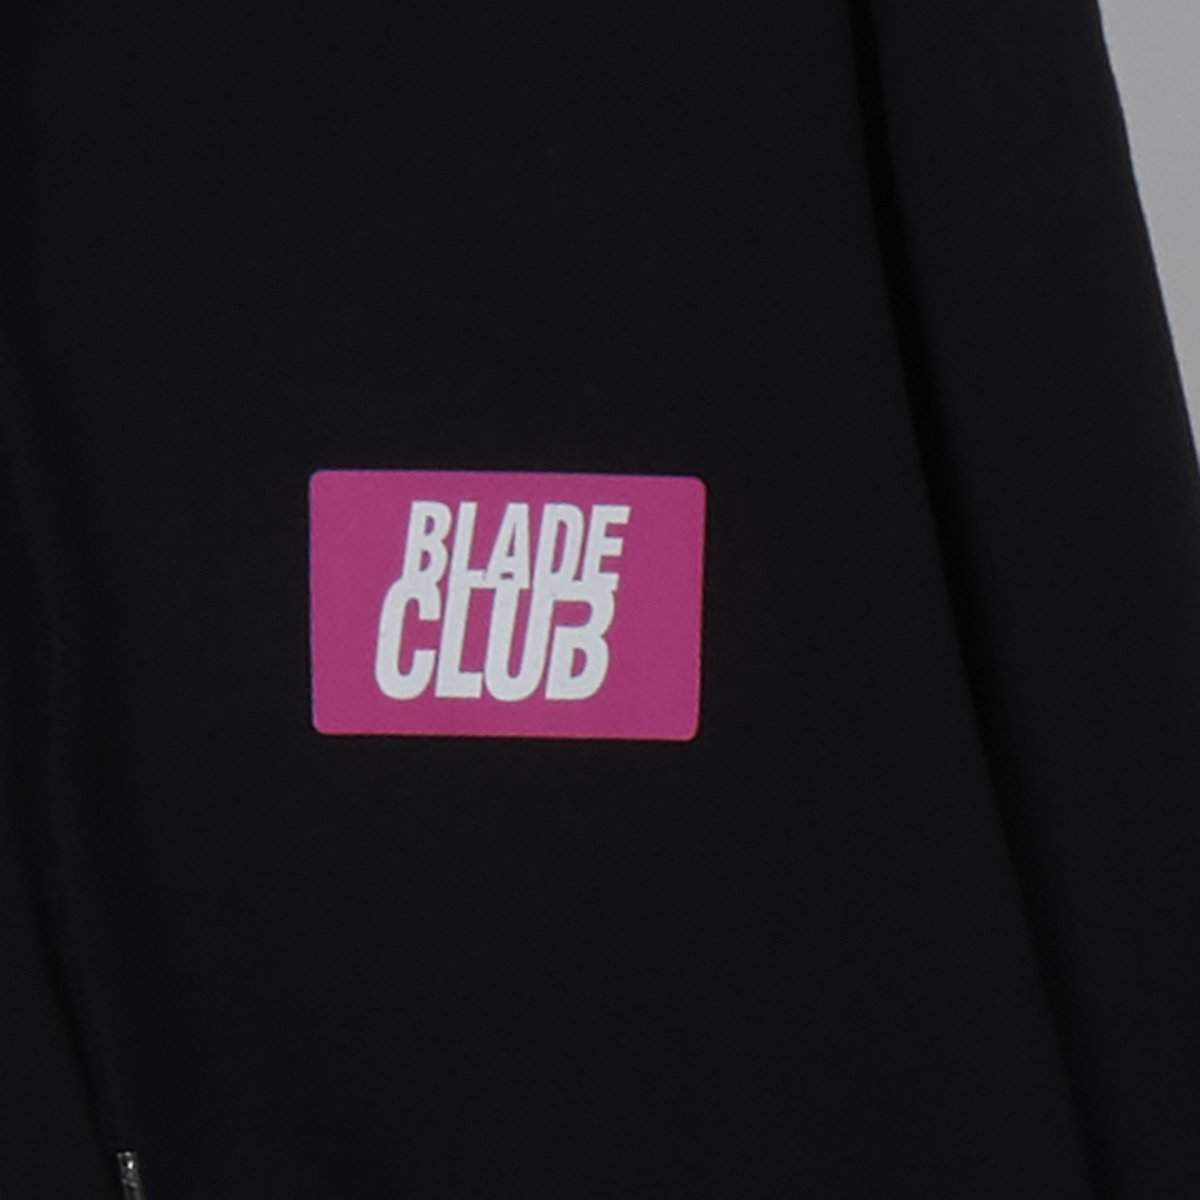 Blade Club Team Wax Zip up Black Hoody